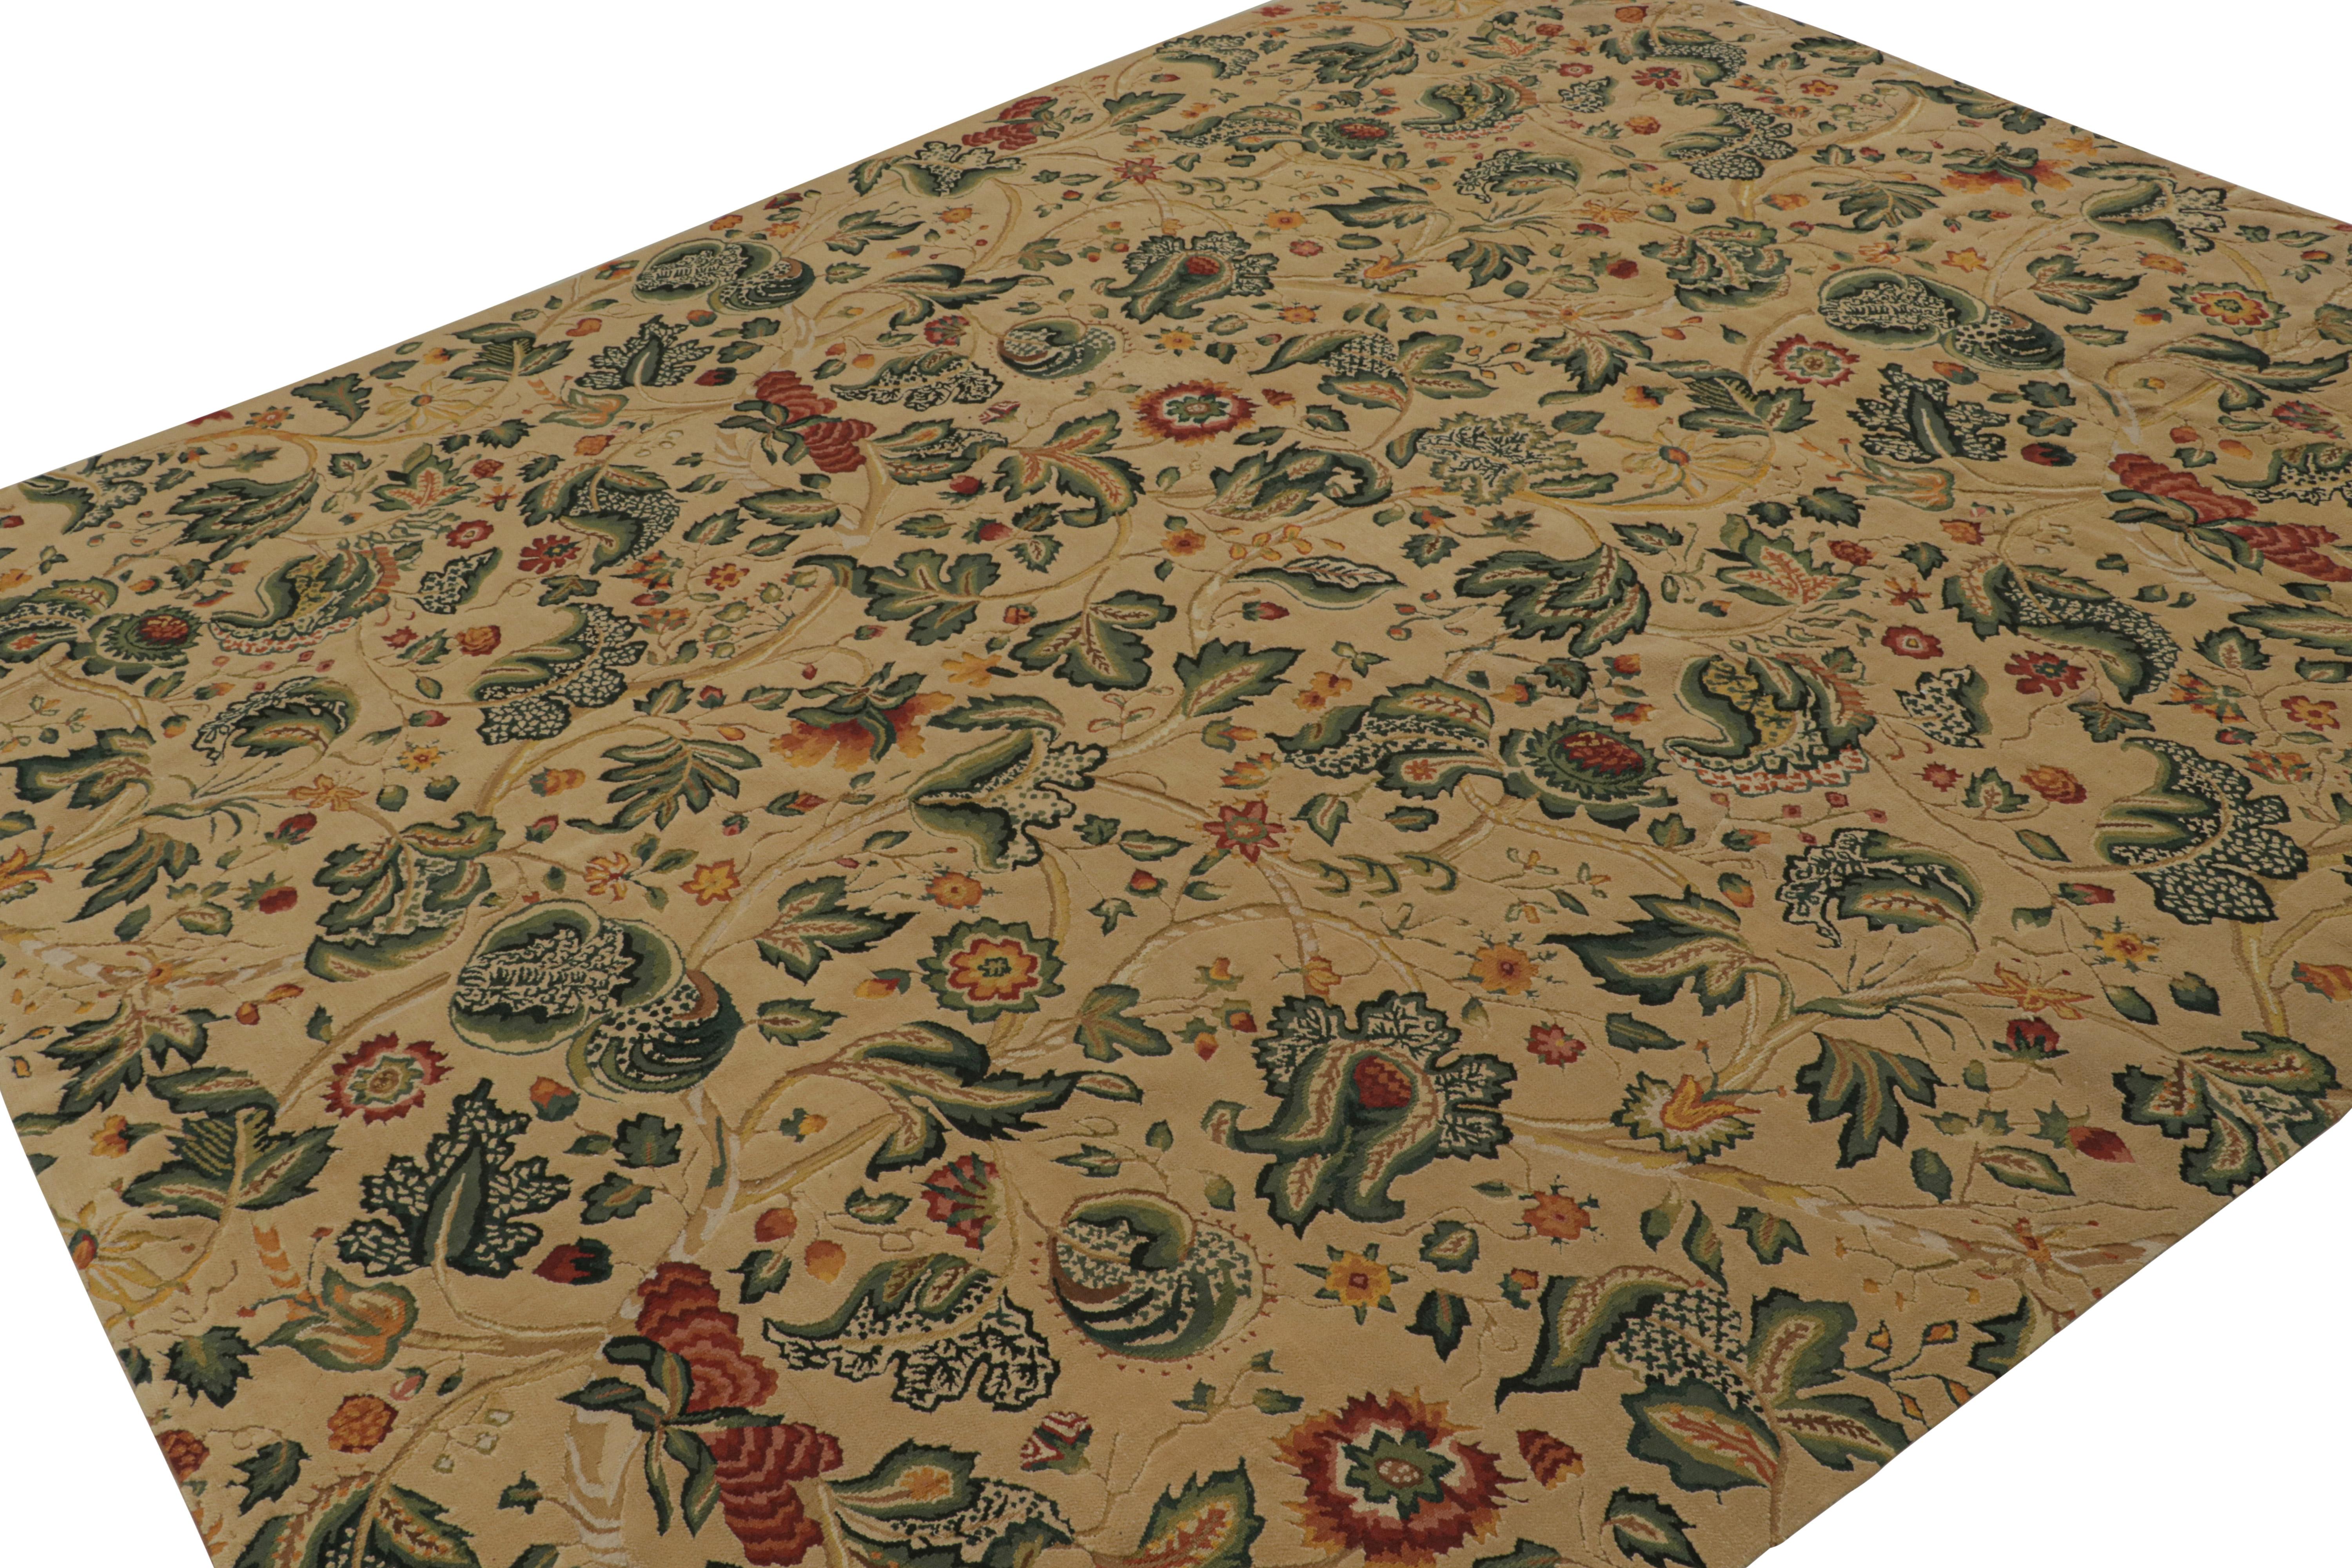 Dieser 9x10 große europäische Flachgewebe-Teppich aus handgewebter Wolle ist von englischen Tudor-Teppichen und Wandteppichen aus dem 18. Jahrhundert inspiriert. Das Design besteht aus floralen Mustern in Grün, Rot, Gold und blaugrünen Akzenten auf